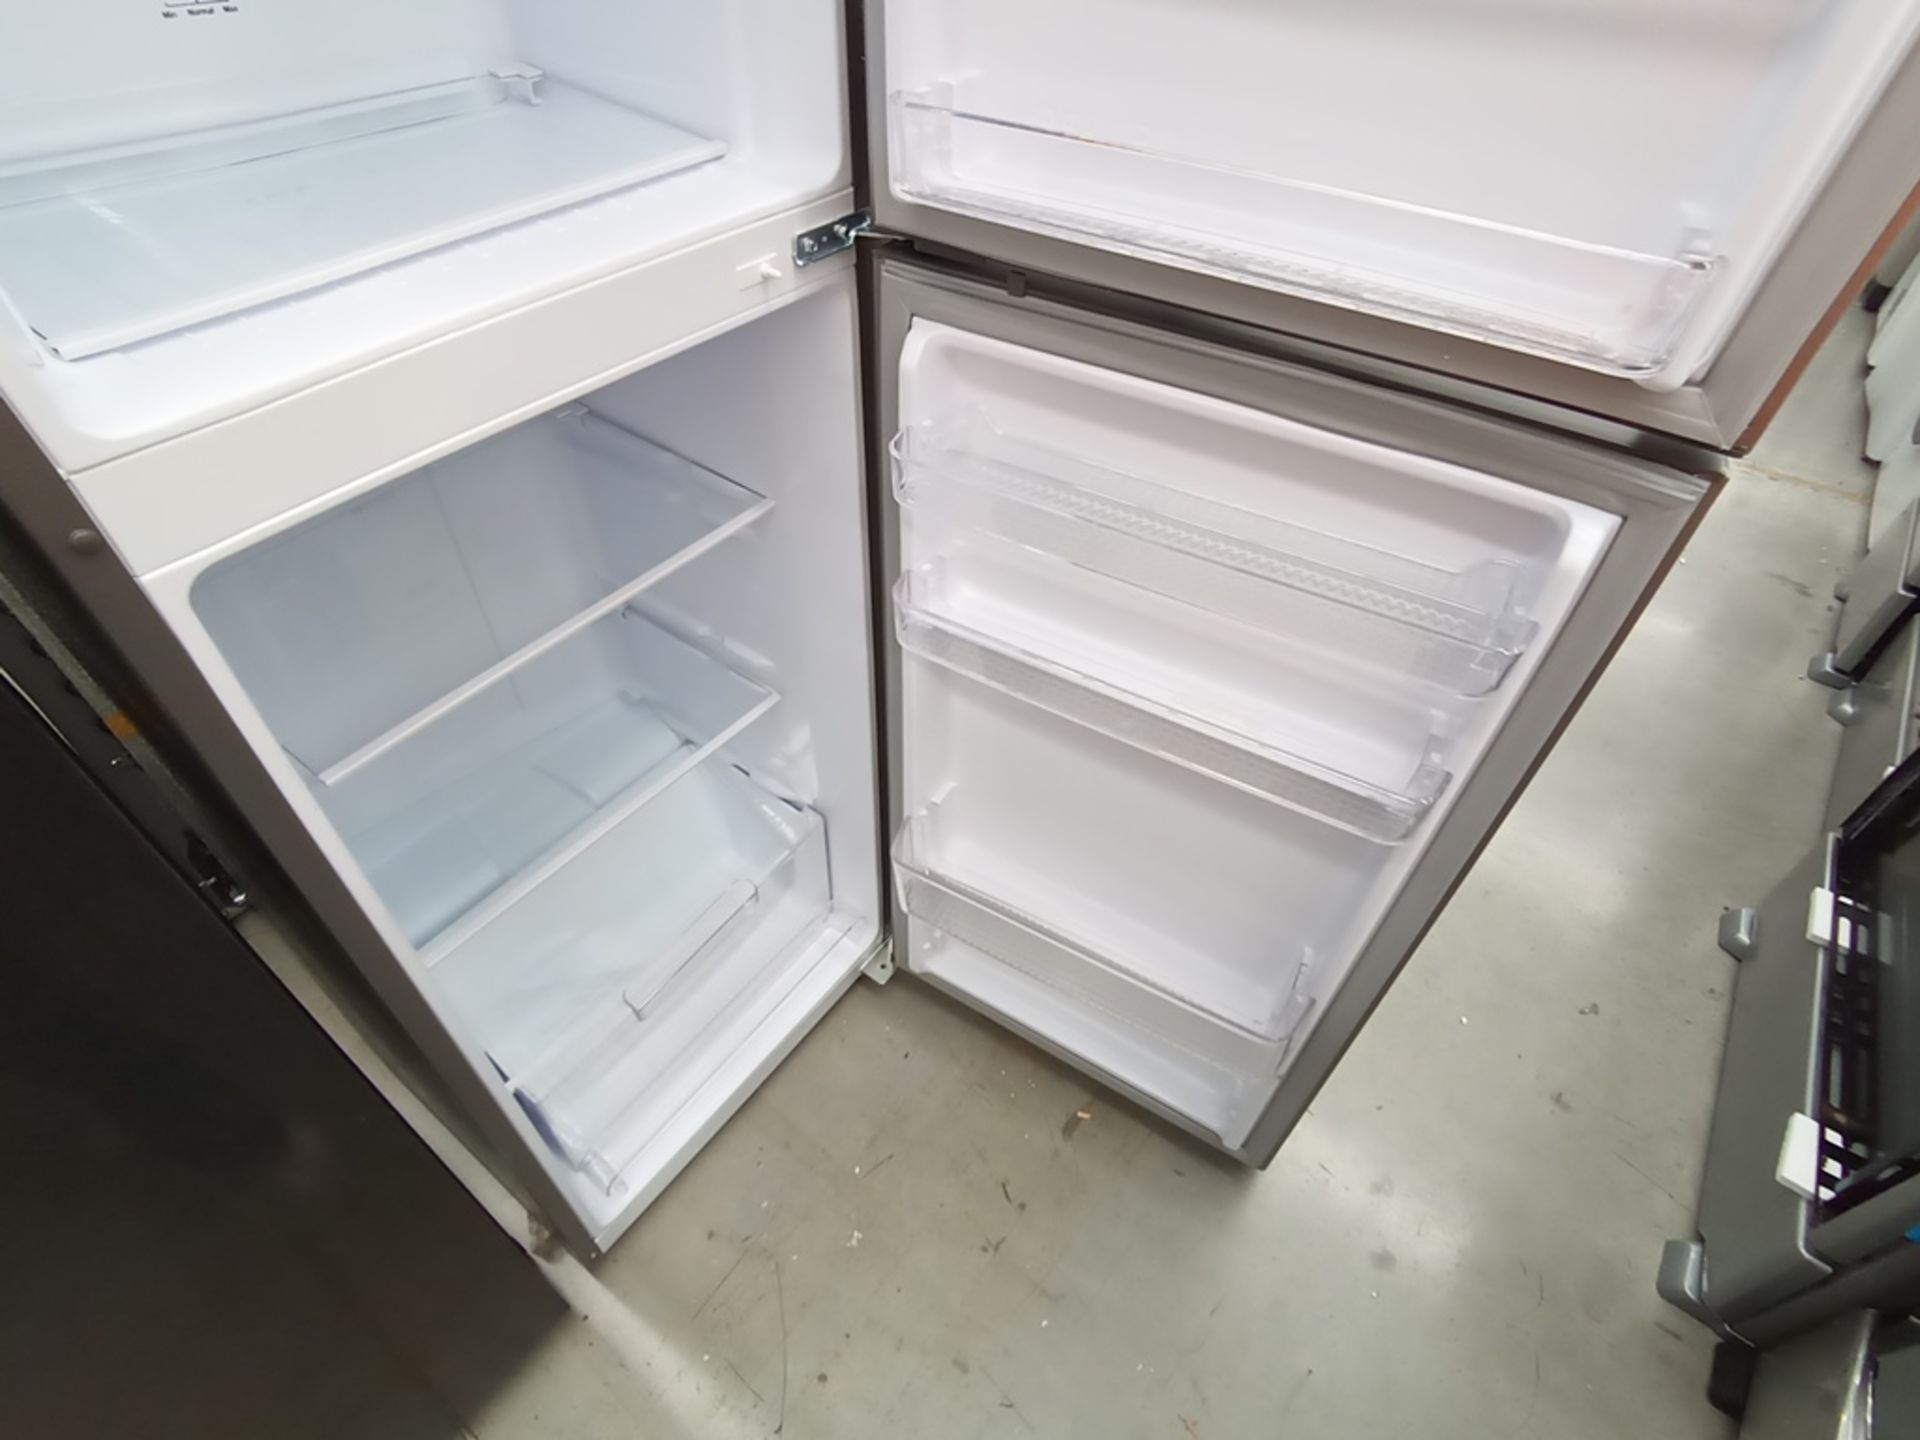 Lote de 2 refrigeradores contiene: 1 Refrigerador con dispensador de agua, Marca Mabe, Modelo RMA11 - Image 14 of 15